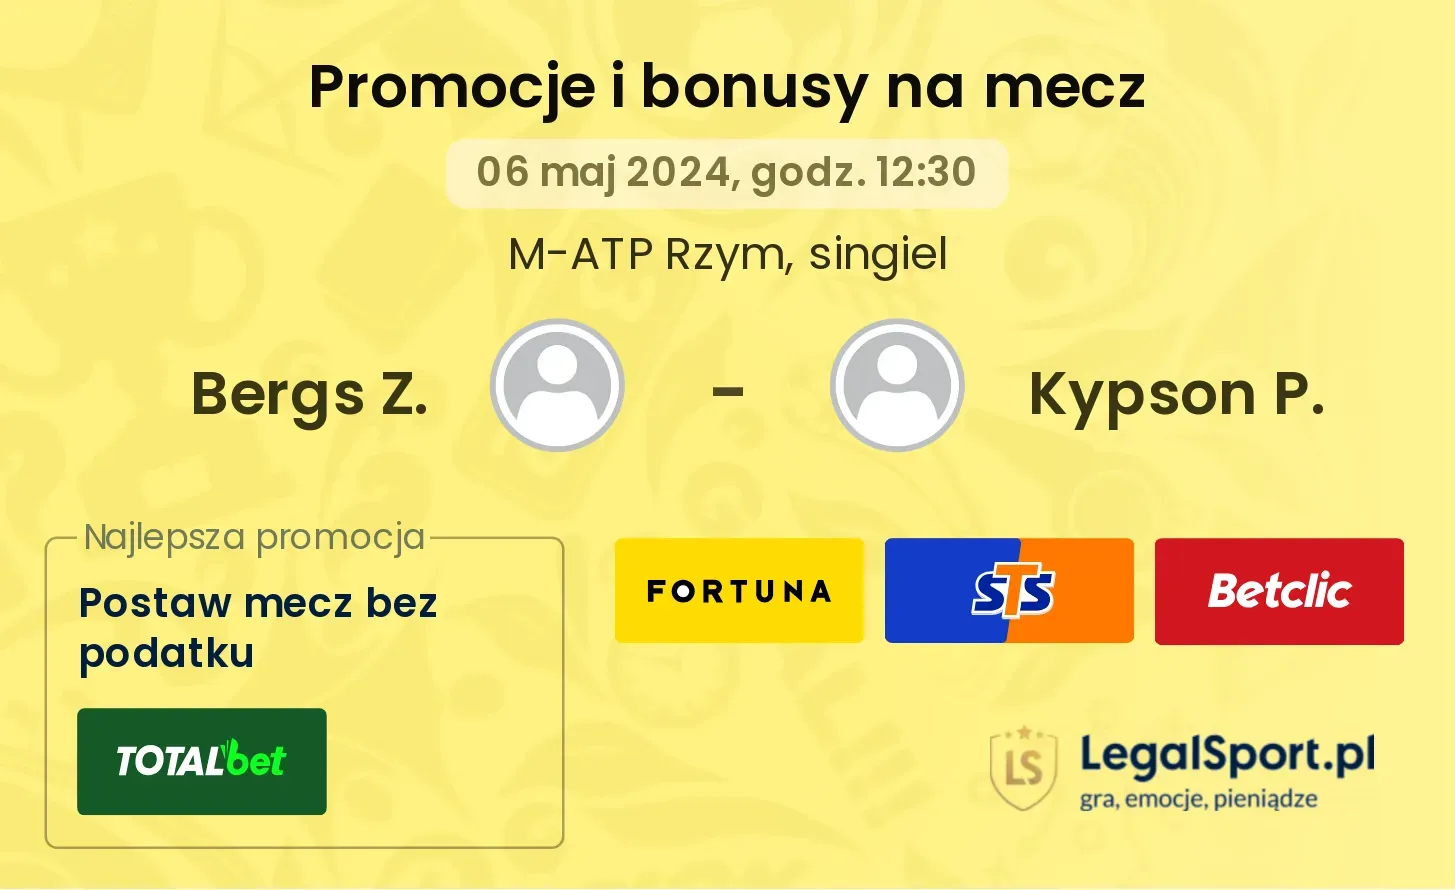 Bergs Z. - Kypson P. promocje bonusy na mecz